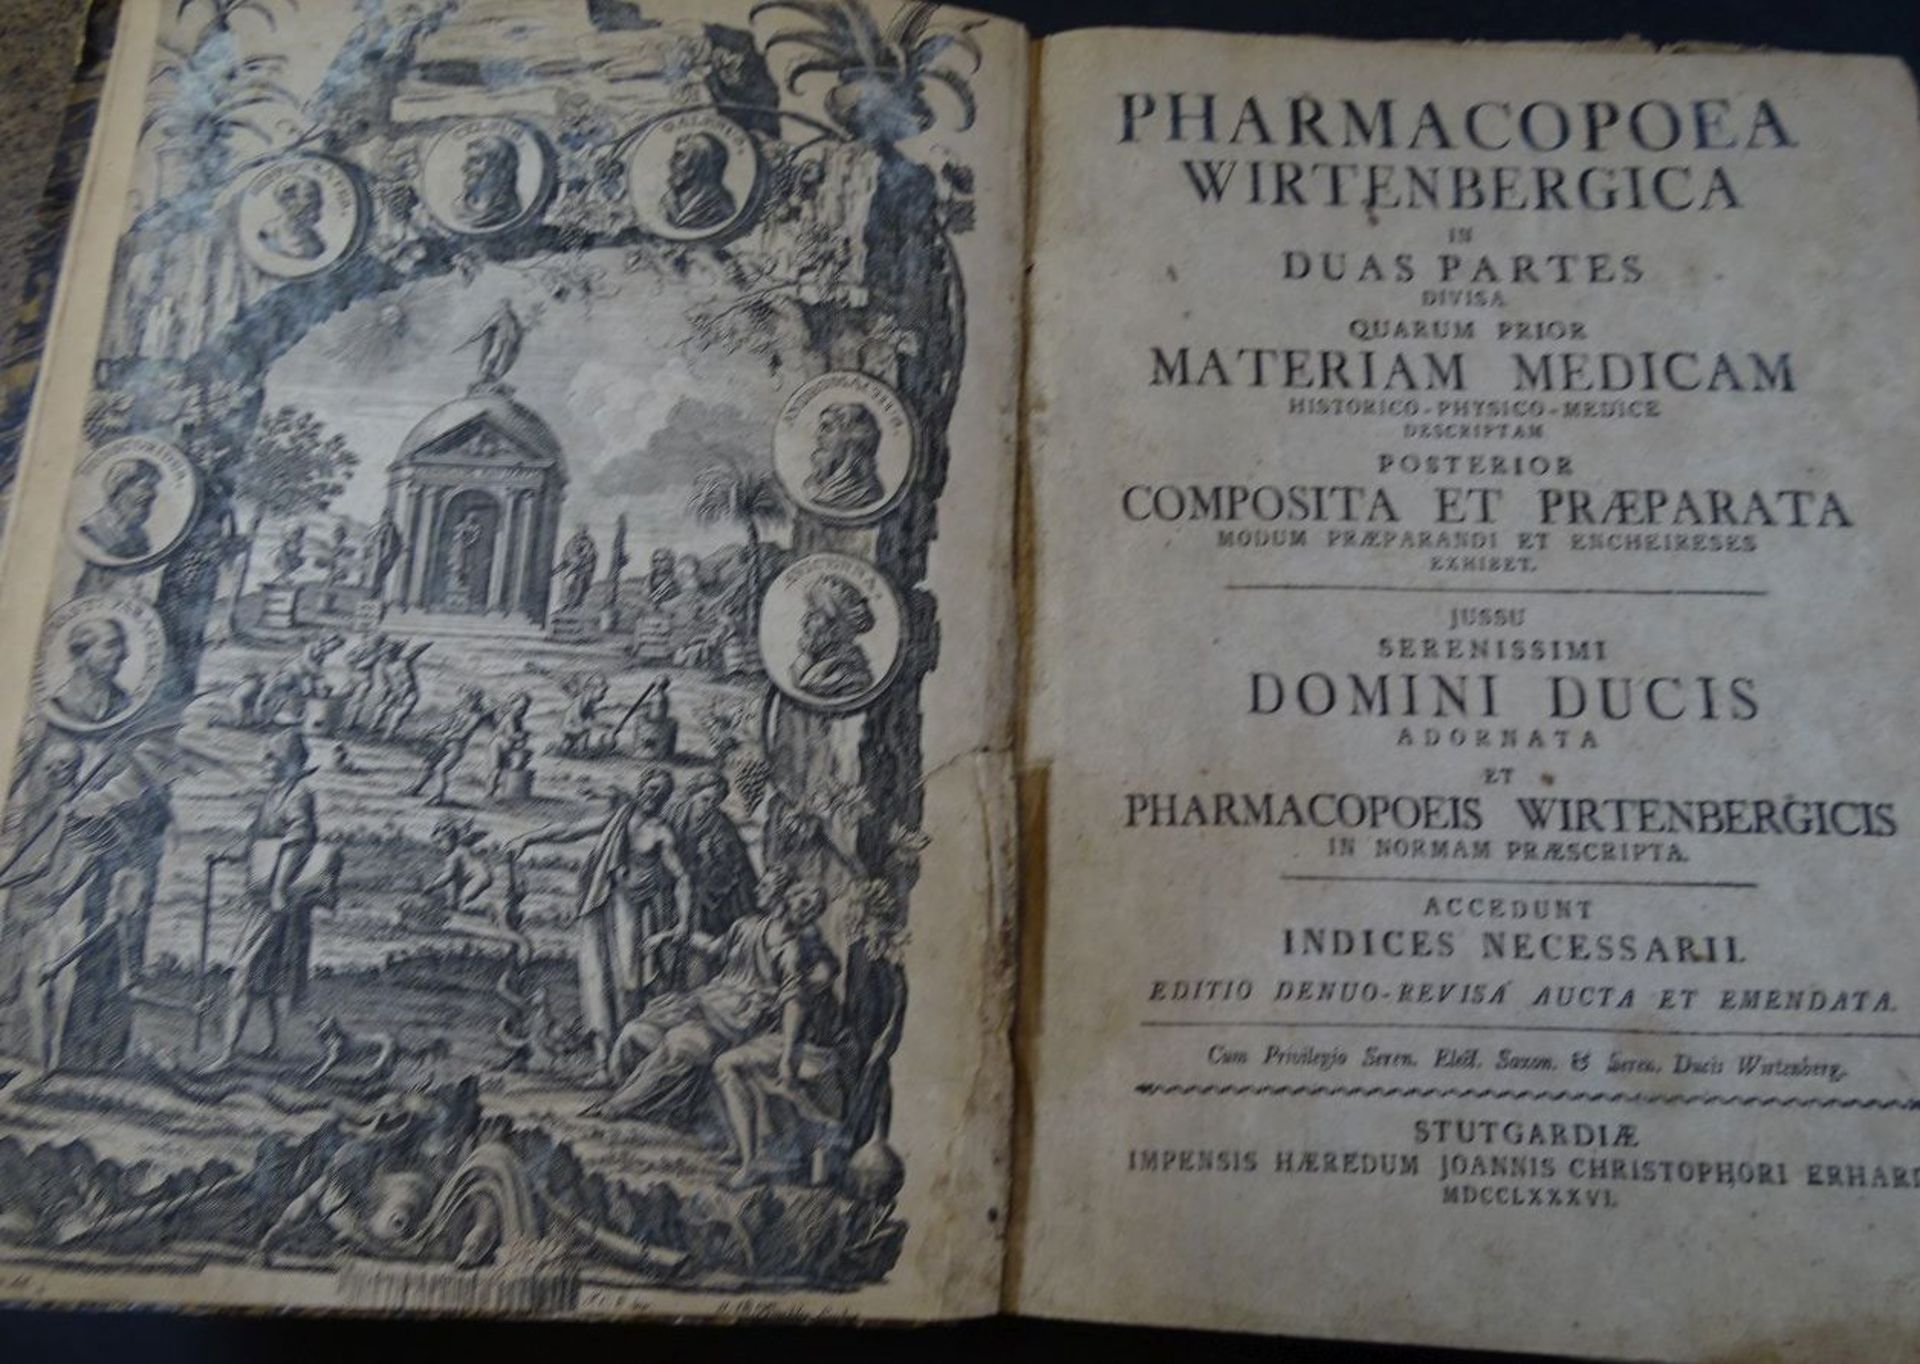 "Pharmacopoea Wirtenbergica", 1786, Titelkupfer mit Einriss, Latein, tw. stockfleckig, ansonsten gu - Image 2 of 6